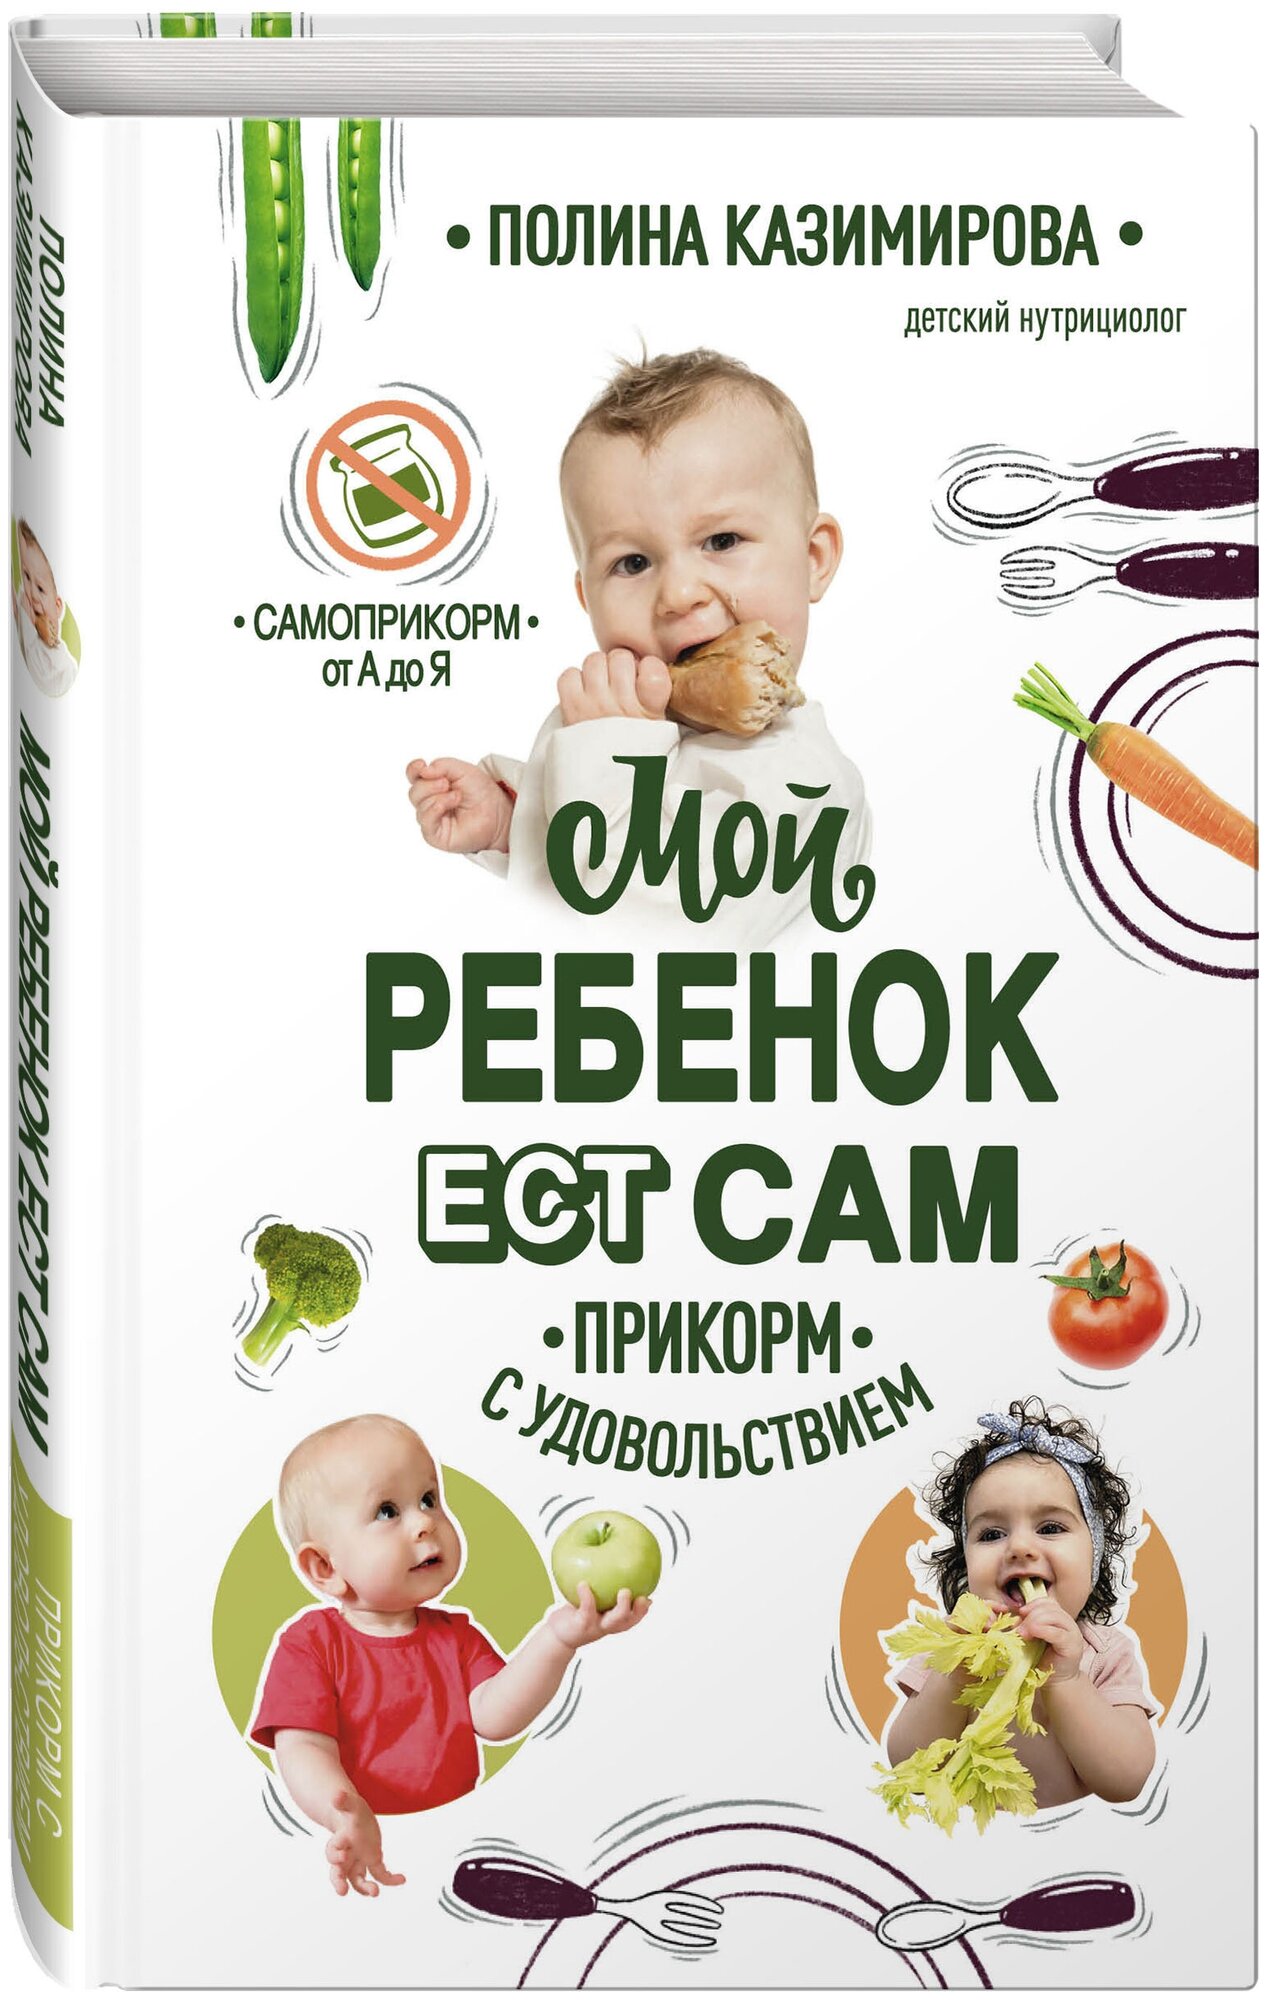 Казимирова П. А. Мой ребёнок ест сам. Прикорм с удовольствием